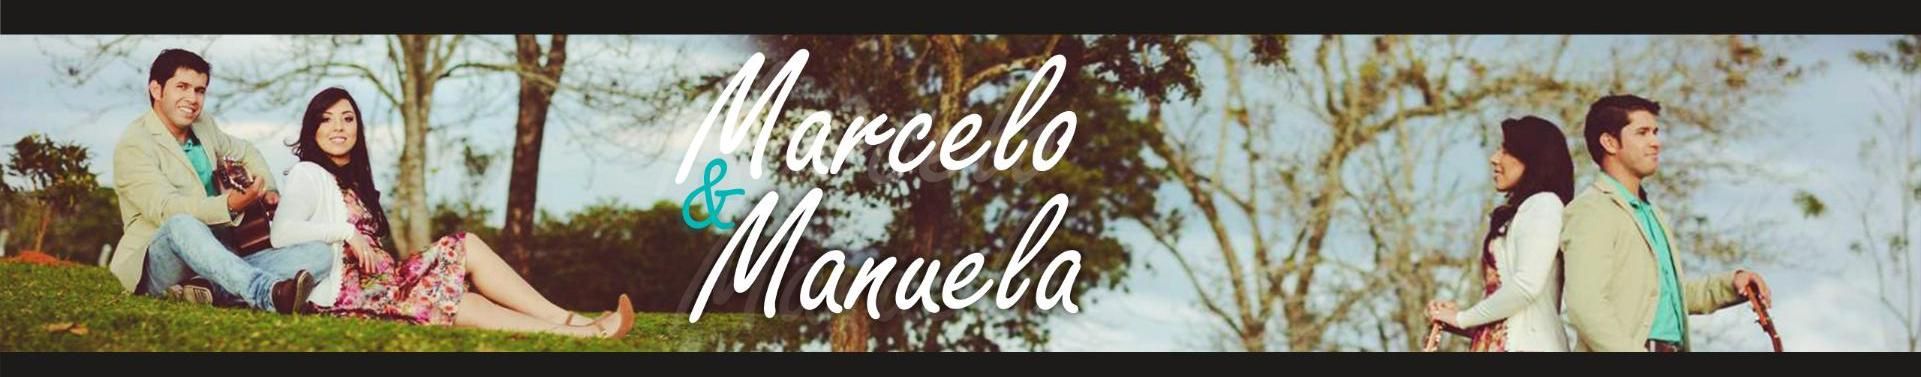 Imagem de capa de Marcelo e Manuela